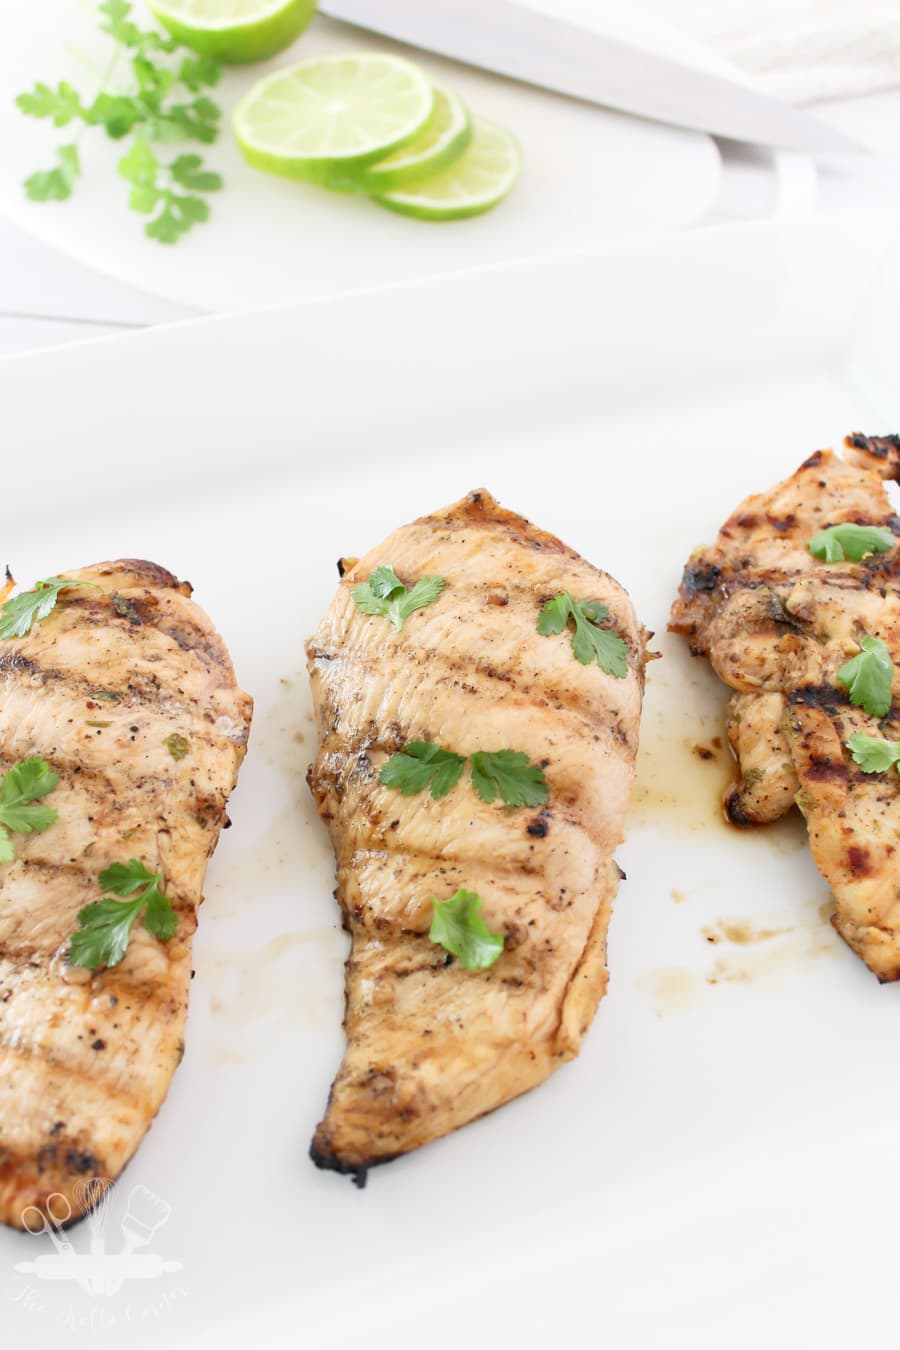 Facile marinata di pollo al cilantro e lime in 30 minuti. Perfetta per le grigliate estive! 